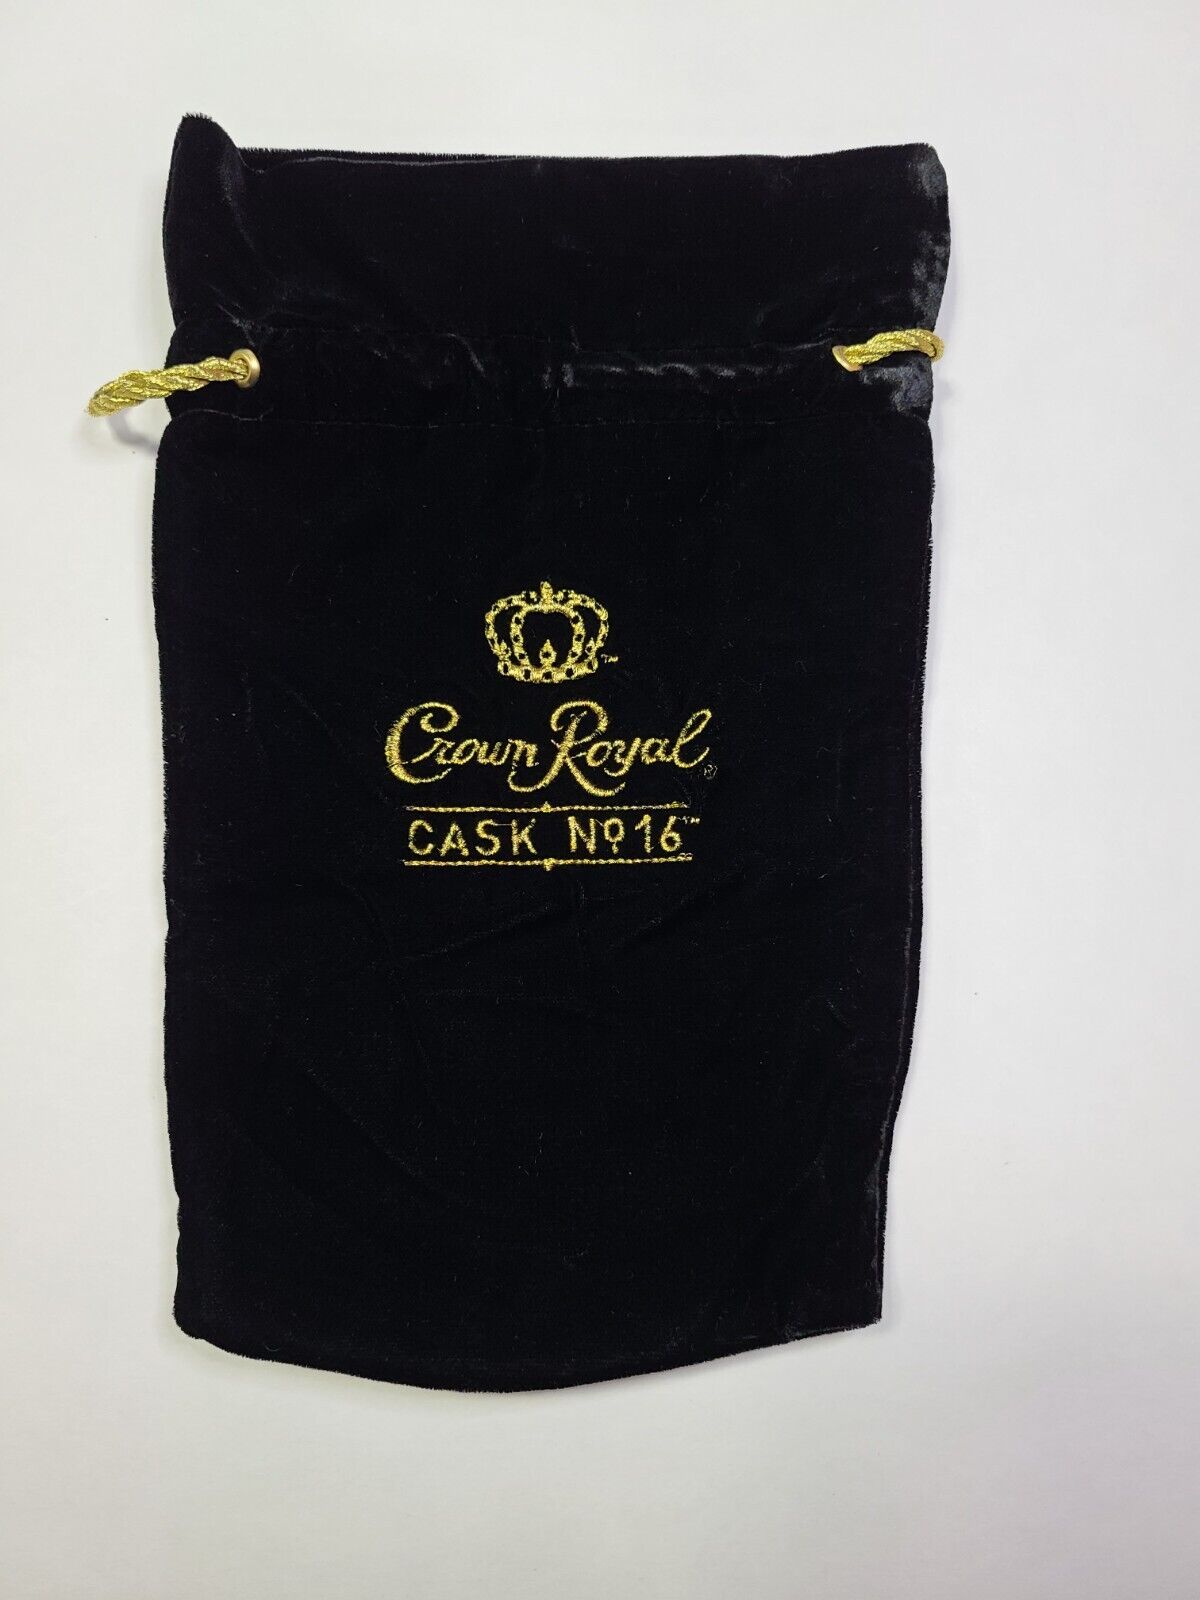 Crown Royal Cask No. 16 Black Velvet Bag Limited Edition Rare